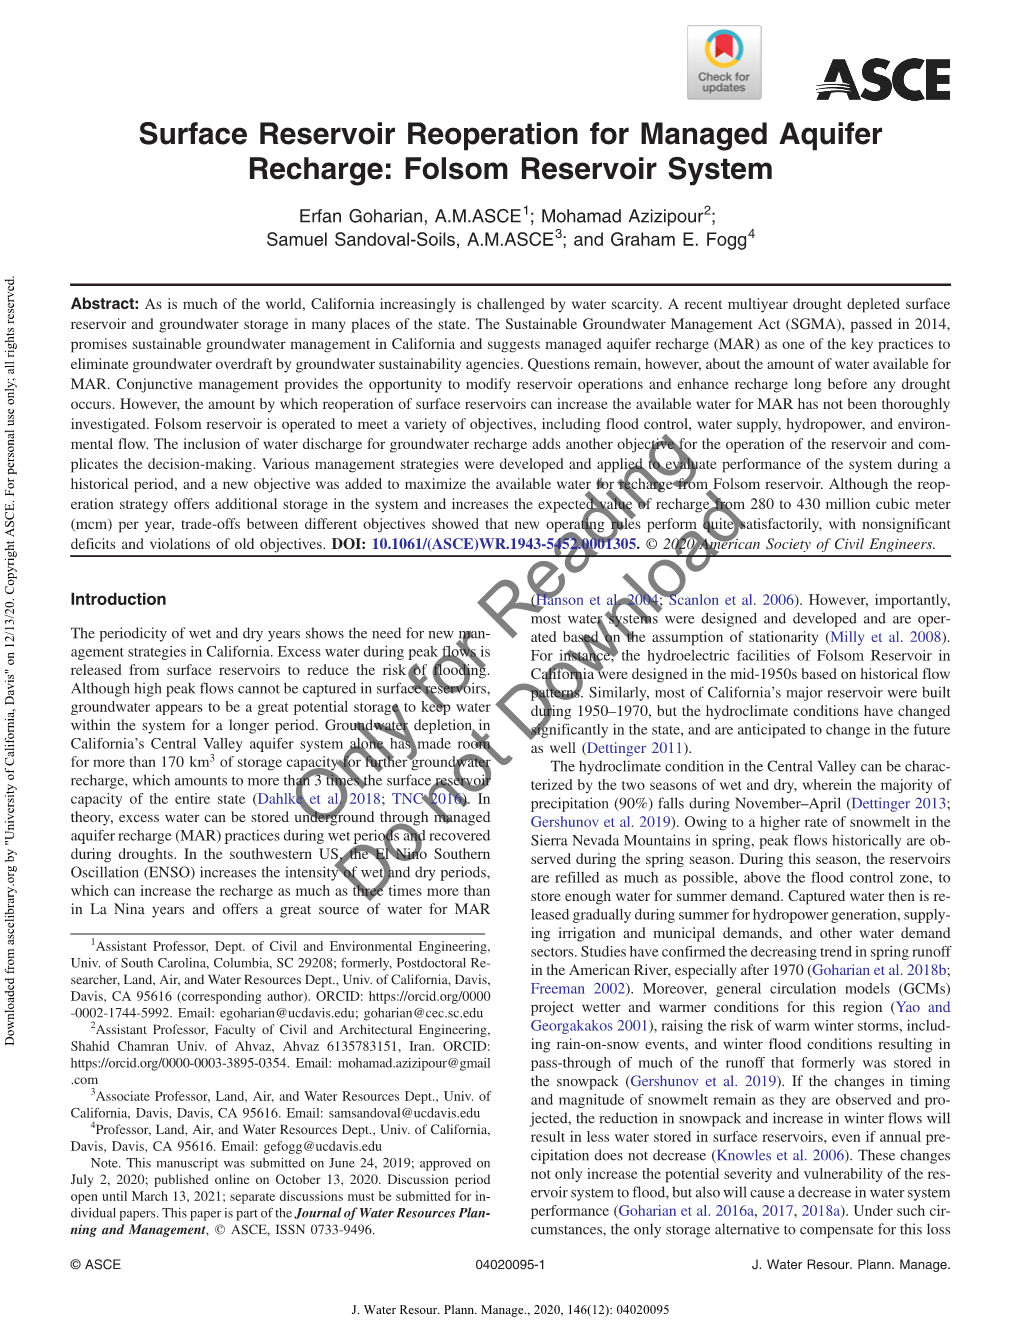 Surface Reservoir Reoperation for Managed Aquifer Recharge: Folsom Reservoir System